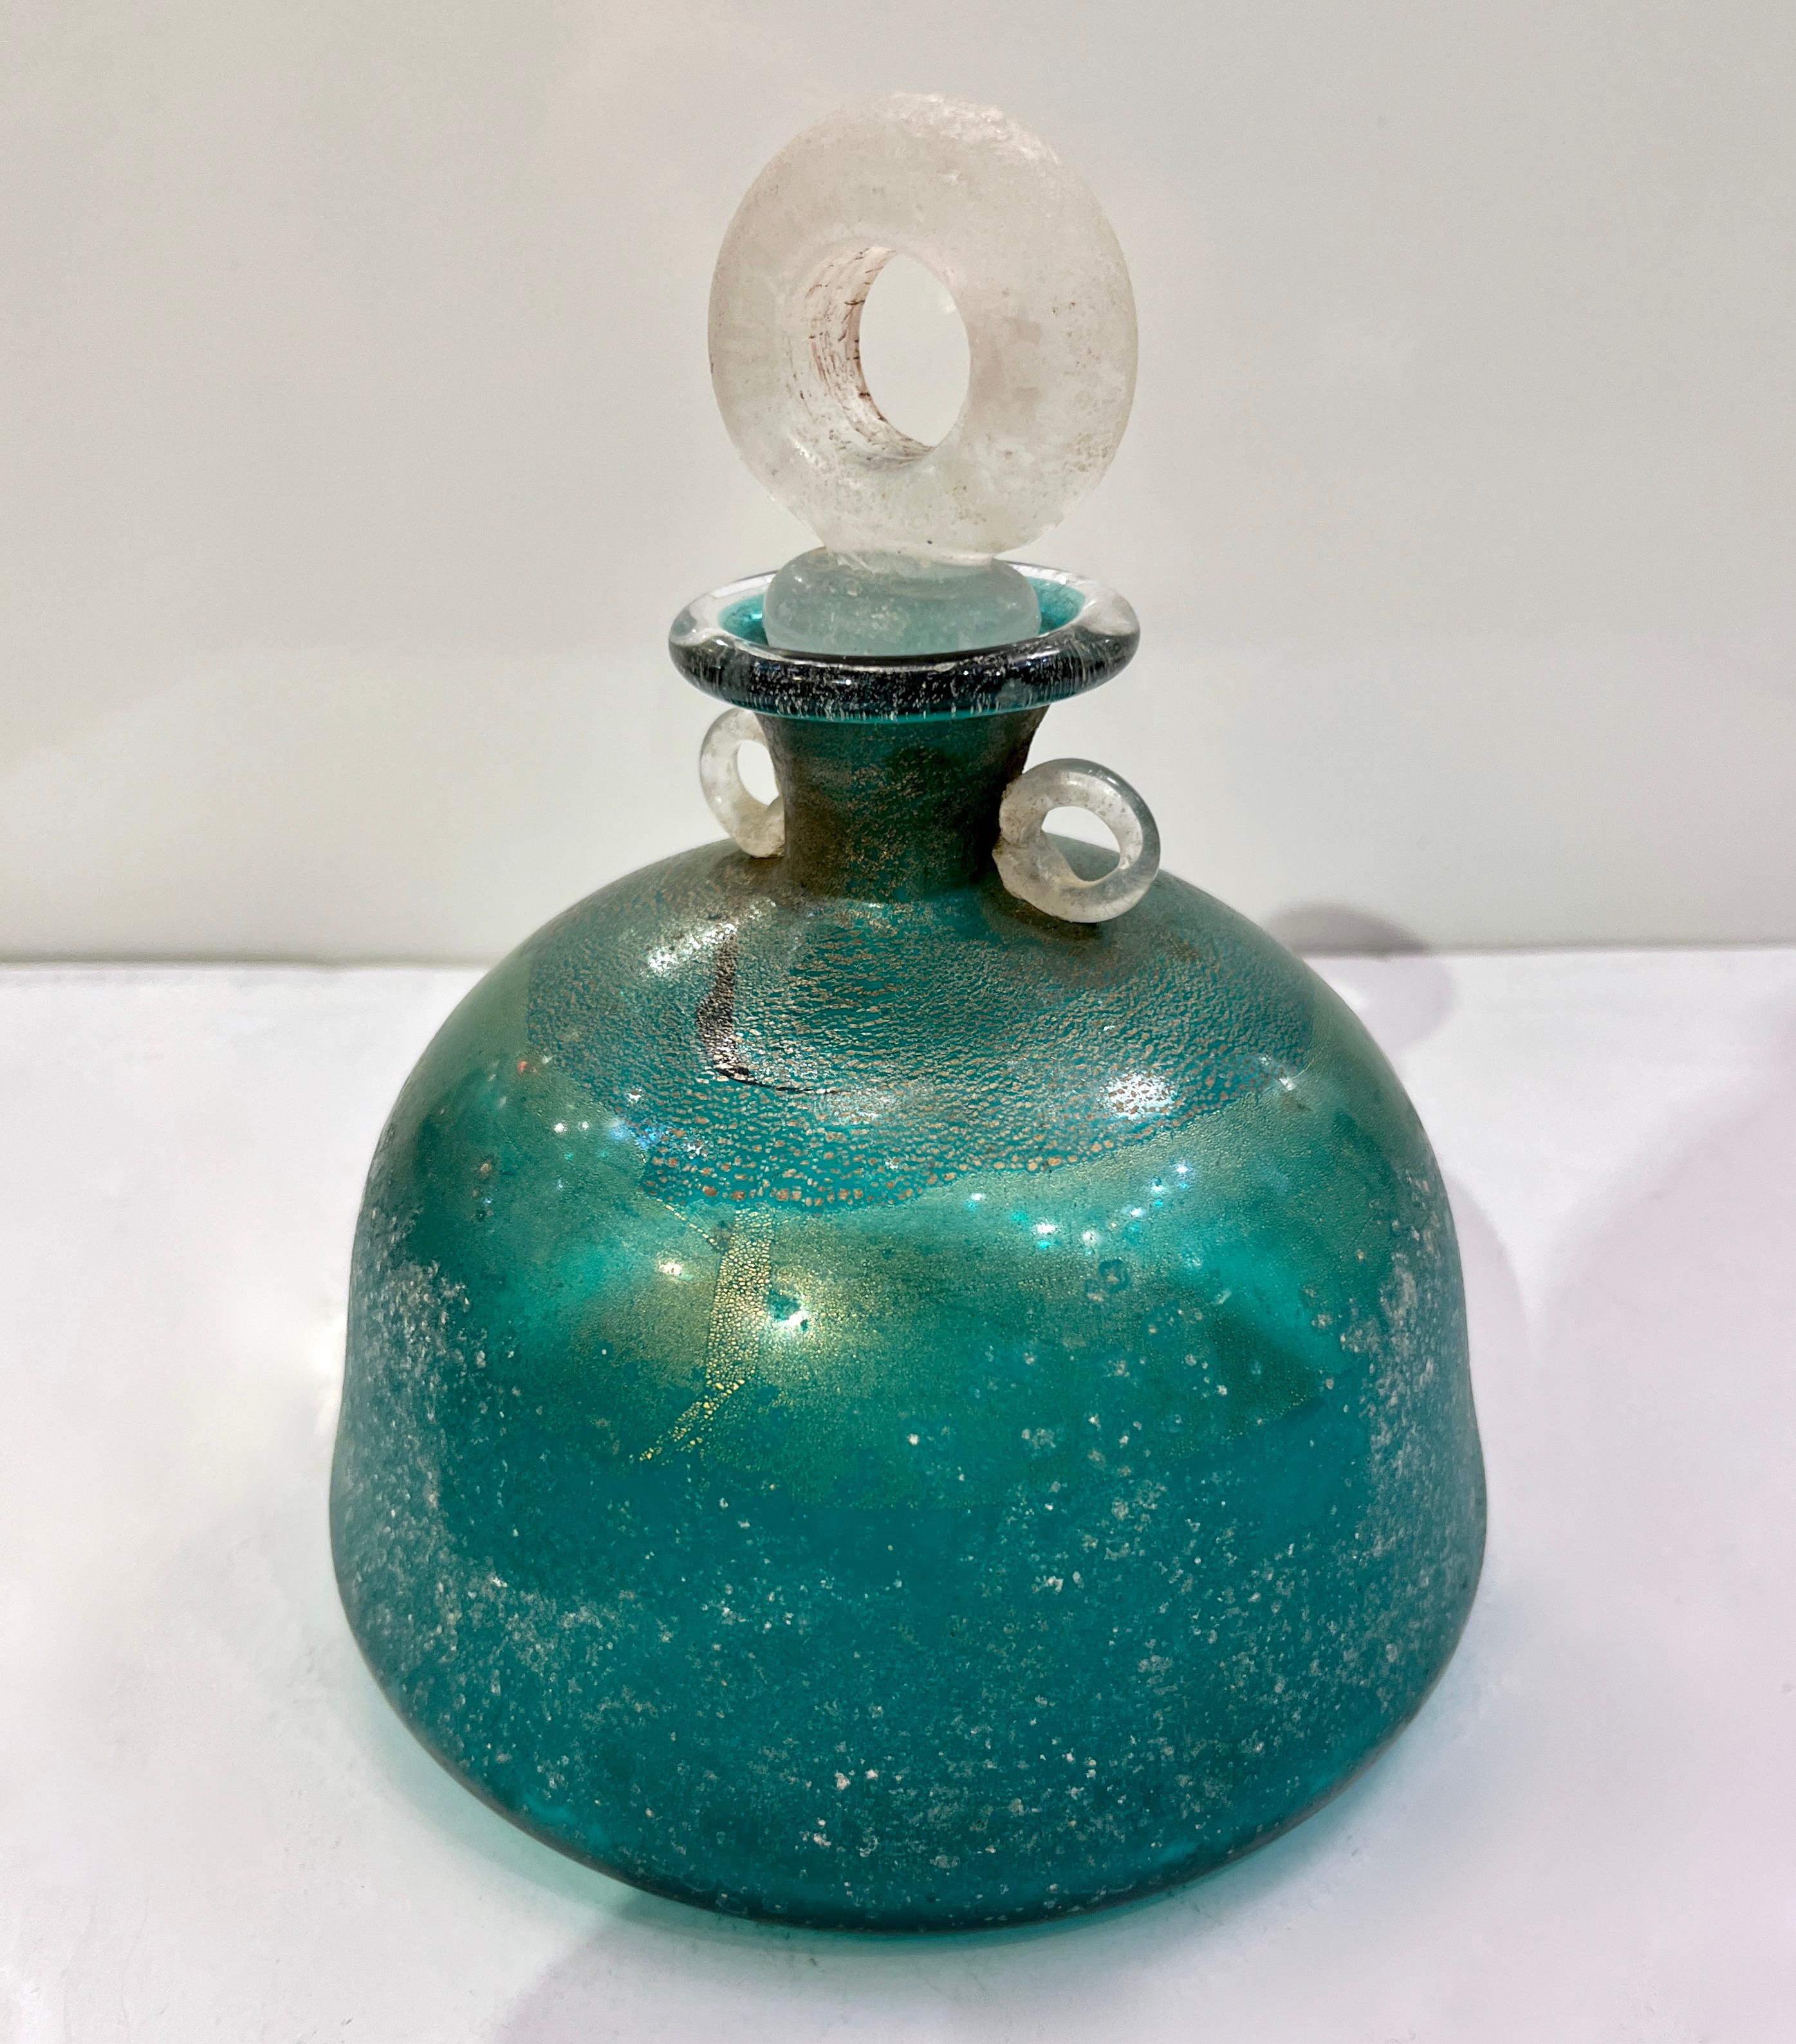 Une fabuleuse paire de bouteilles en verre de Murano turquoise signées Gambaro & Poggi, avec des poignées et des bouchons en scavo blanc, travaillées avec des feuilles d'or 24 Kt dans le verre. Haute qualité d'exécution.
Le corps en verre de couleur